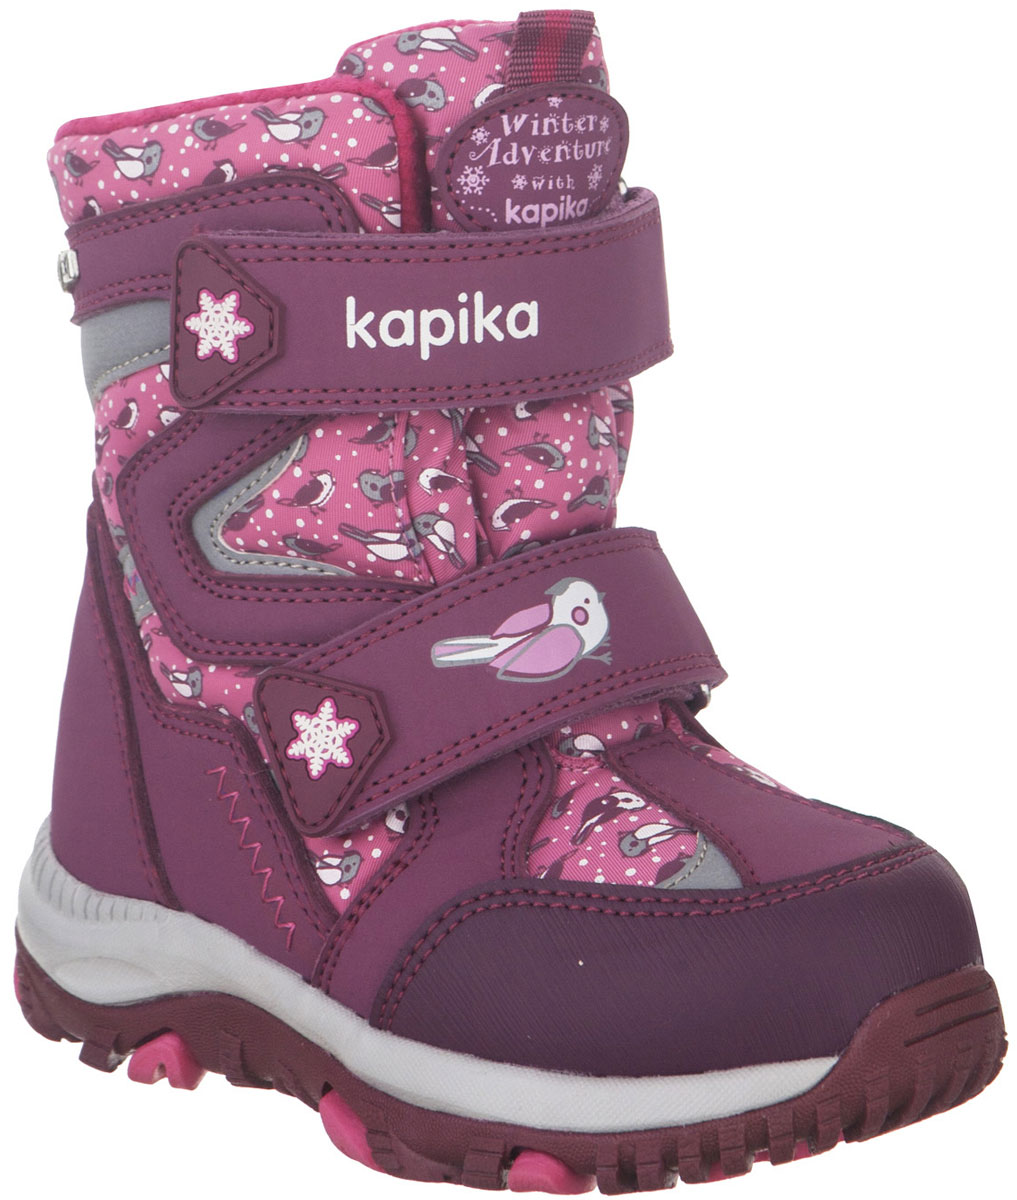 Ботинки для девочки Kapika, цвет: фиолетовый, розовый. 41222-2. Размер 25